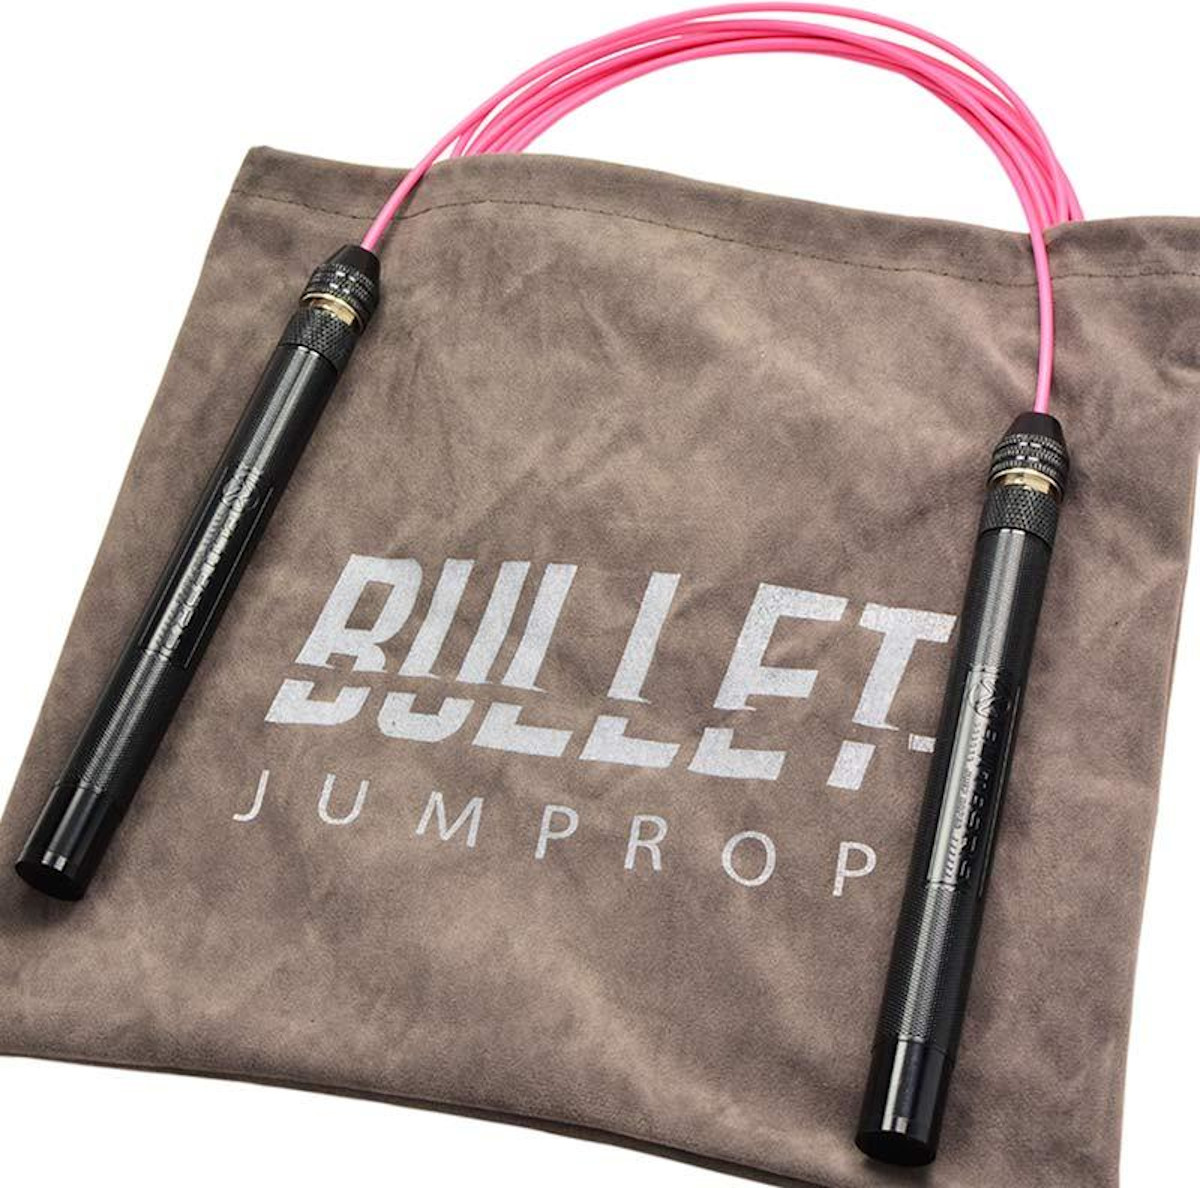 Švihadlo ELITE SRS Bullet FIT Rope - Pink